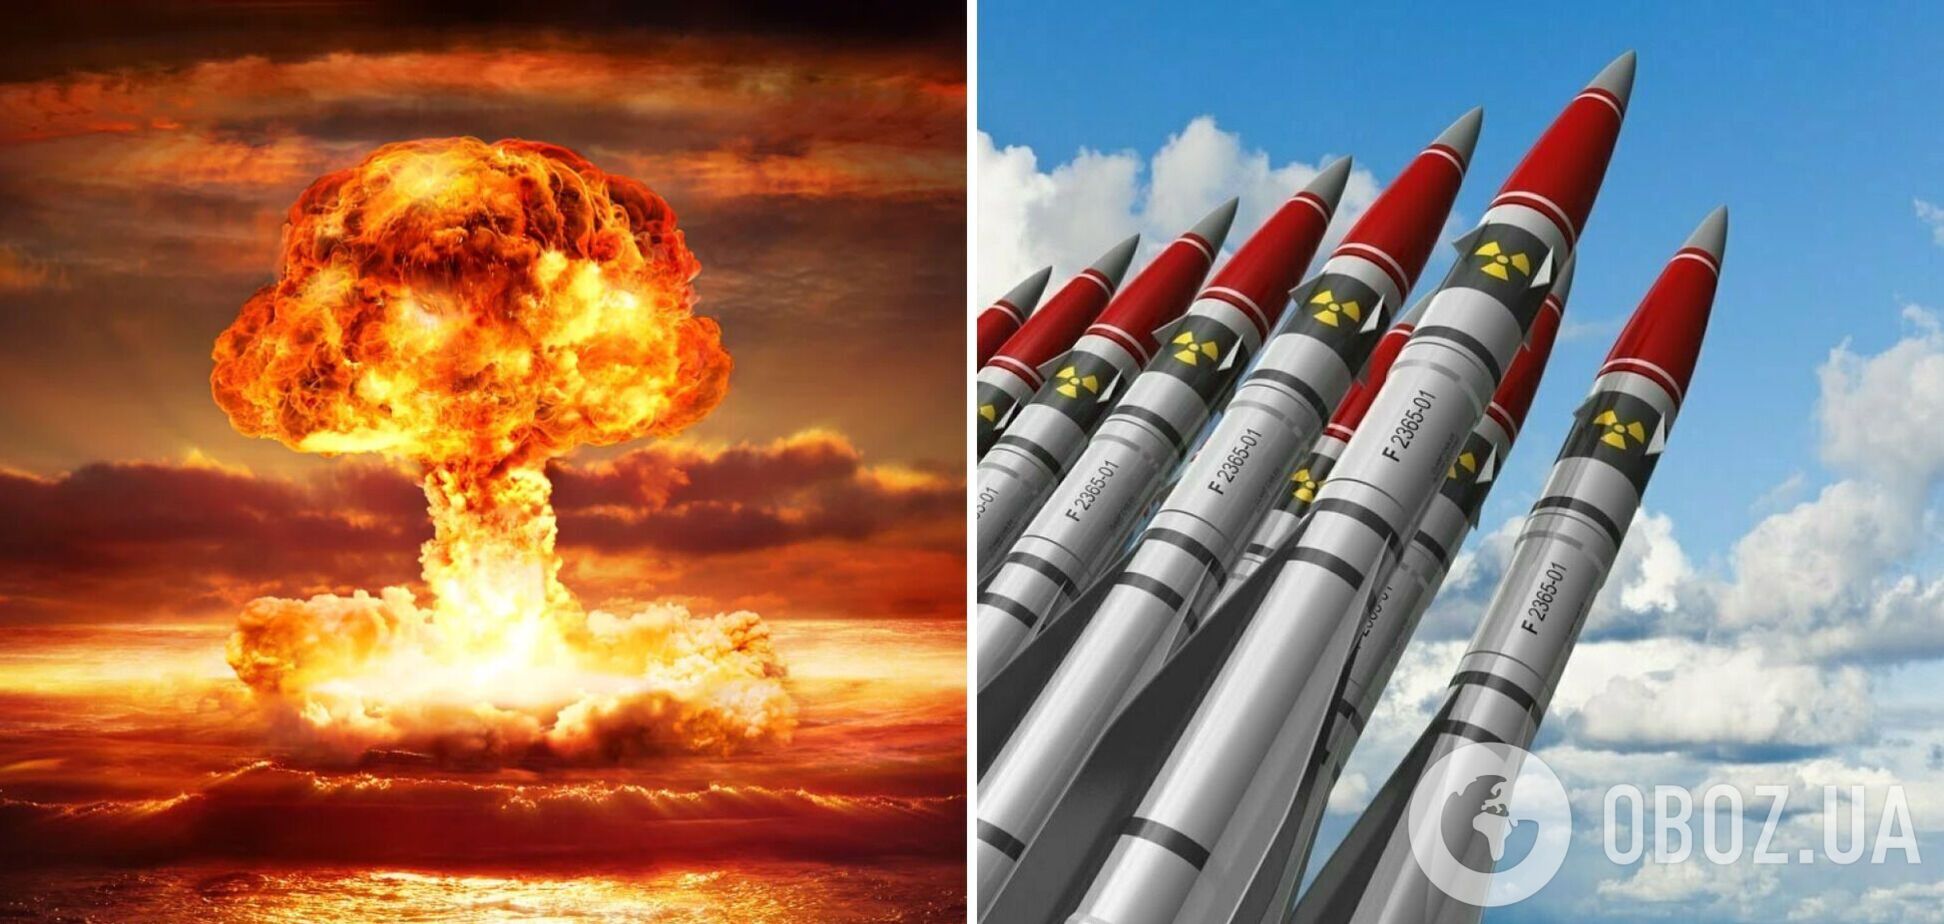 Действительно ли в мордоре кто-то реально может распоряжаться ядерным оружием?